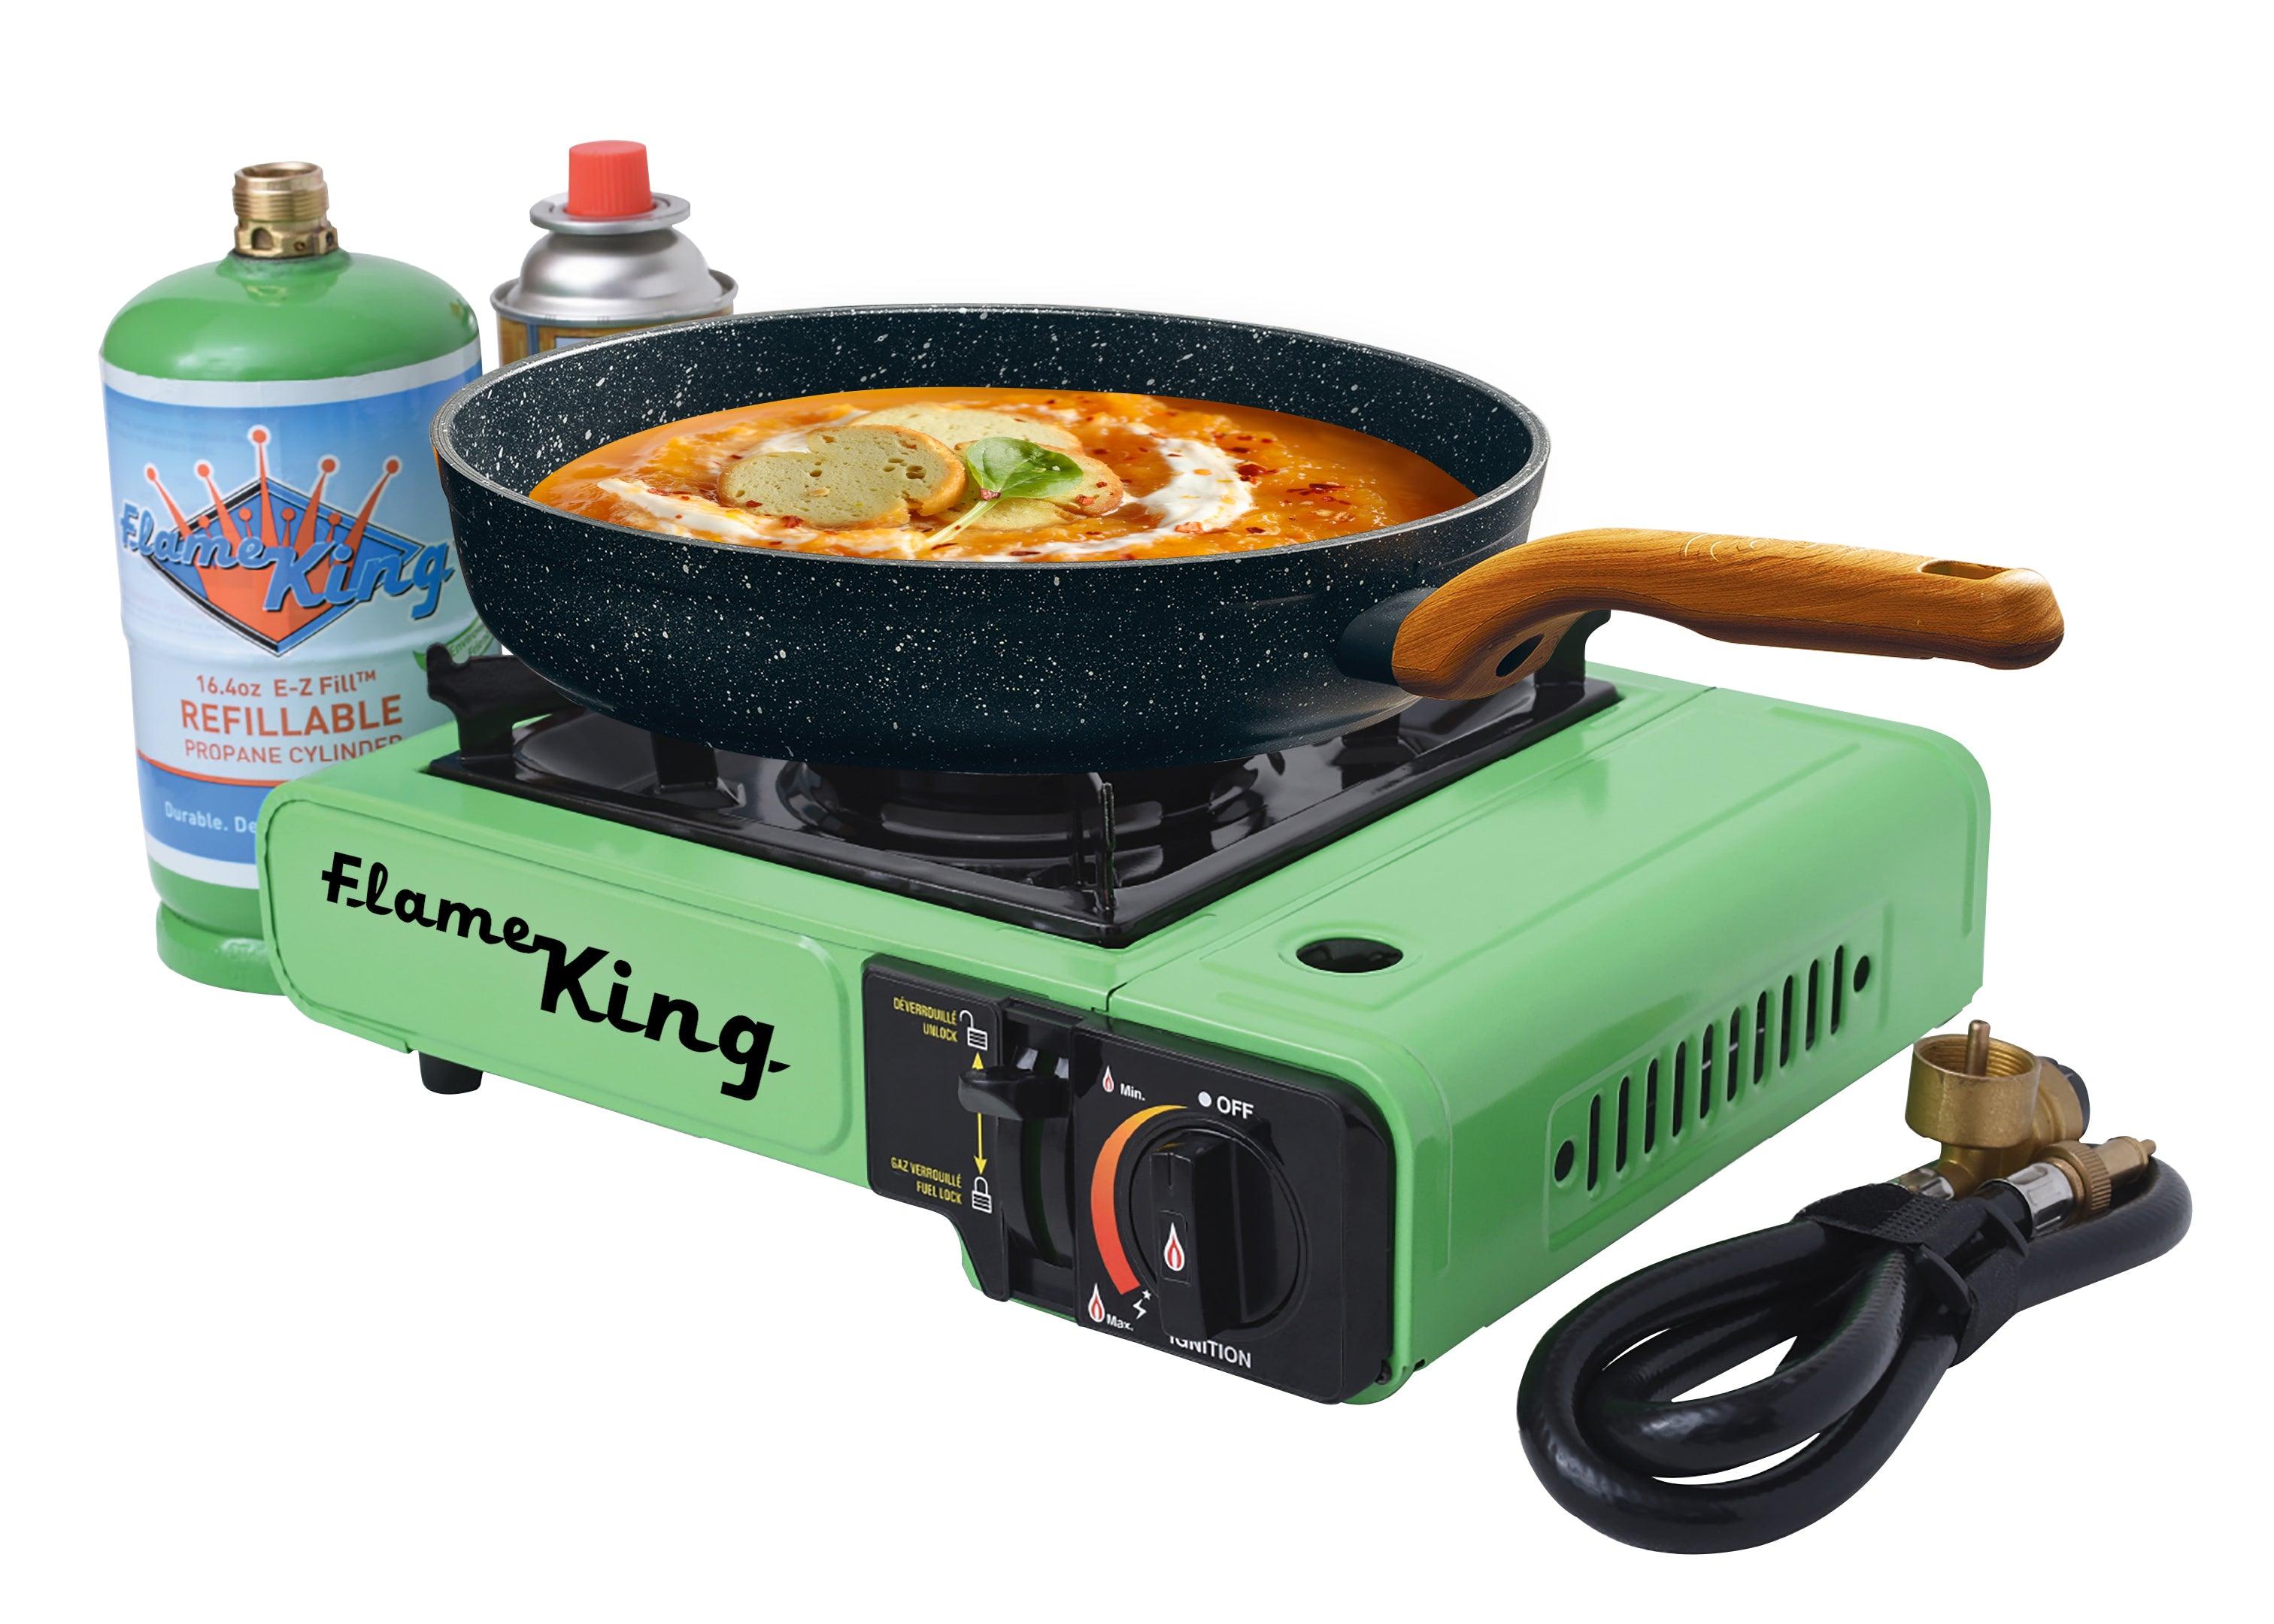 Choice Single Burner Portable Butane Stove with Fry Pan